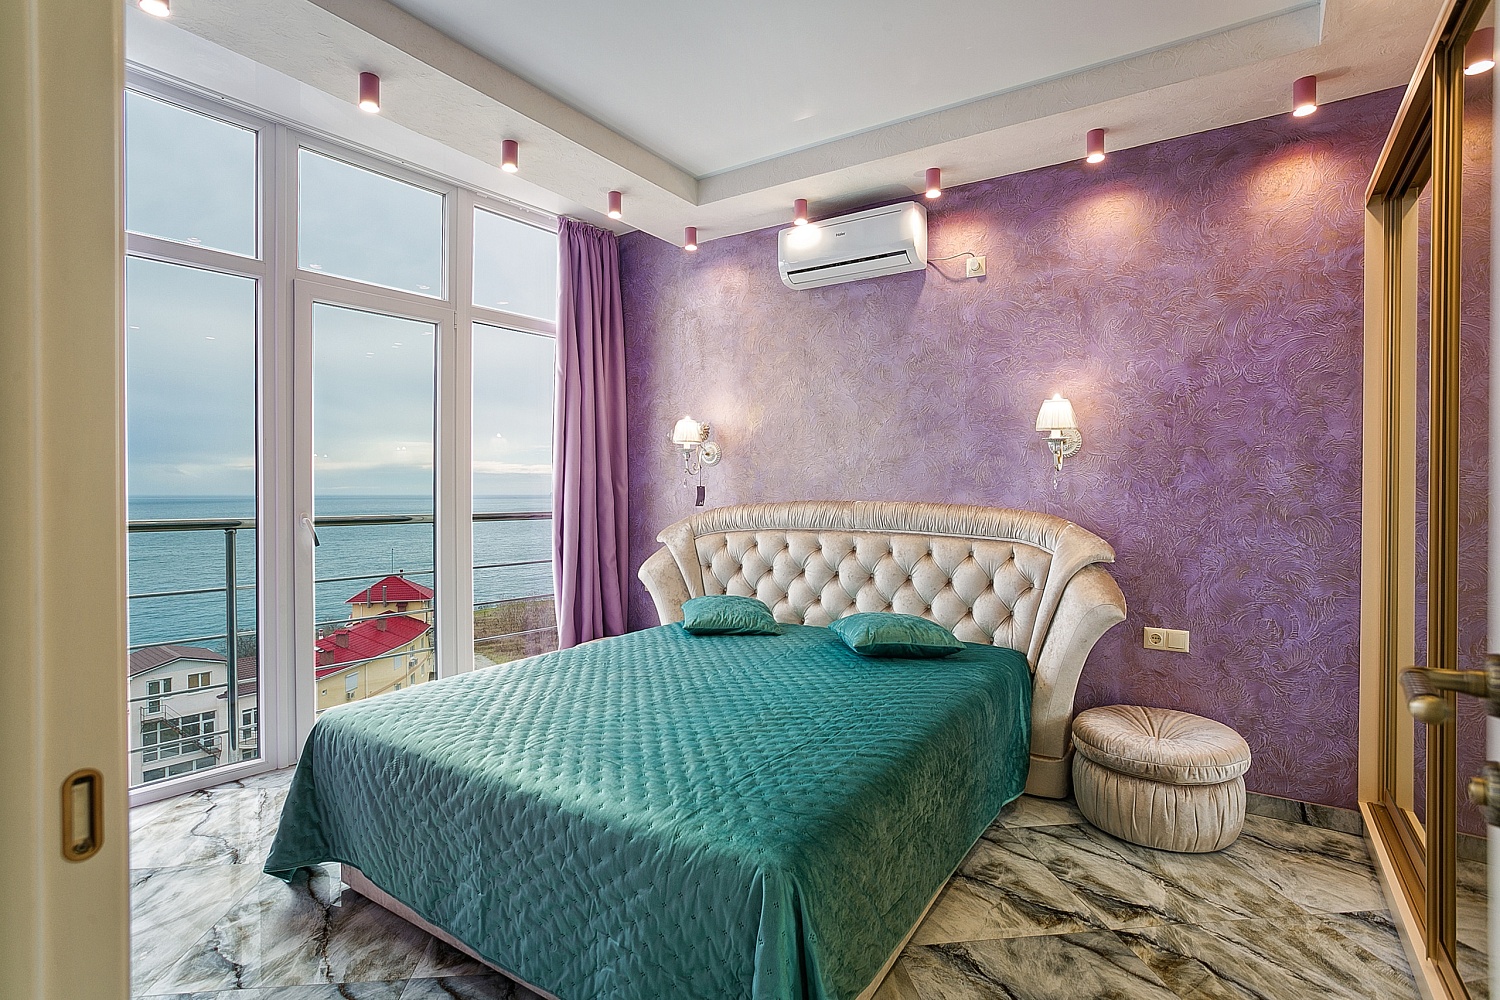  3-комнатная квартира с видом на море в ЖК «Текиндже»